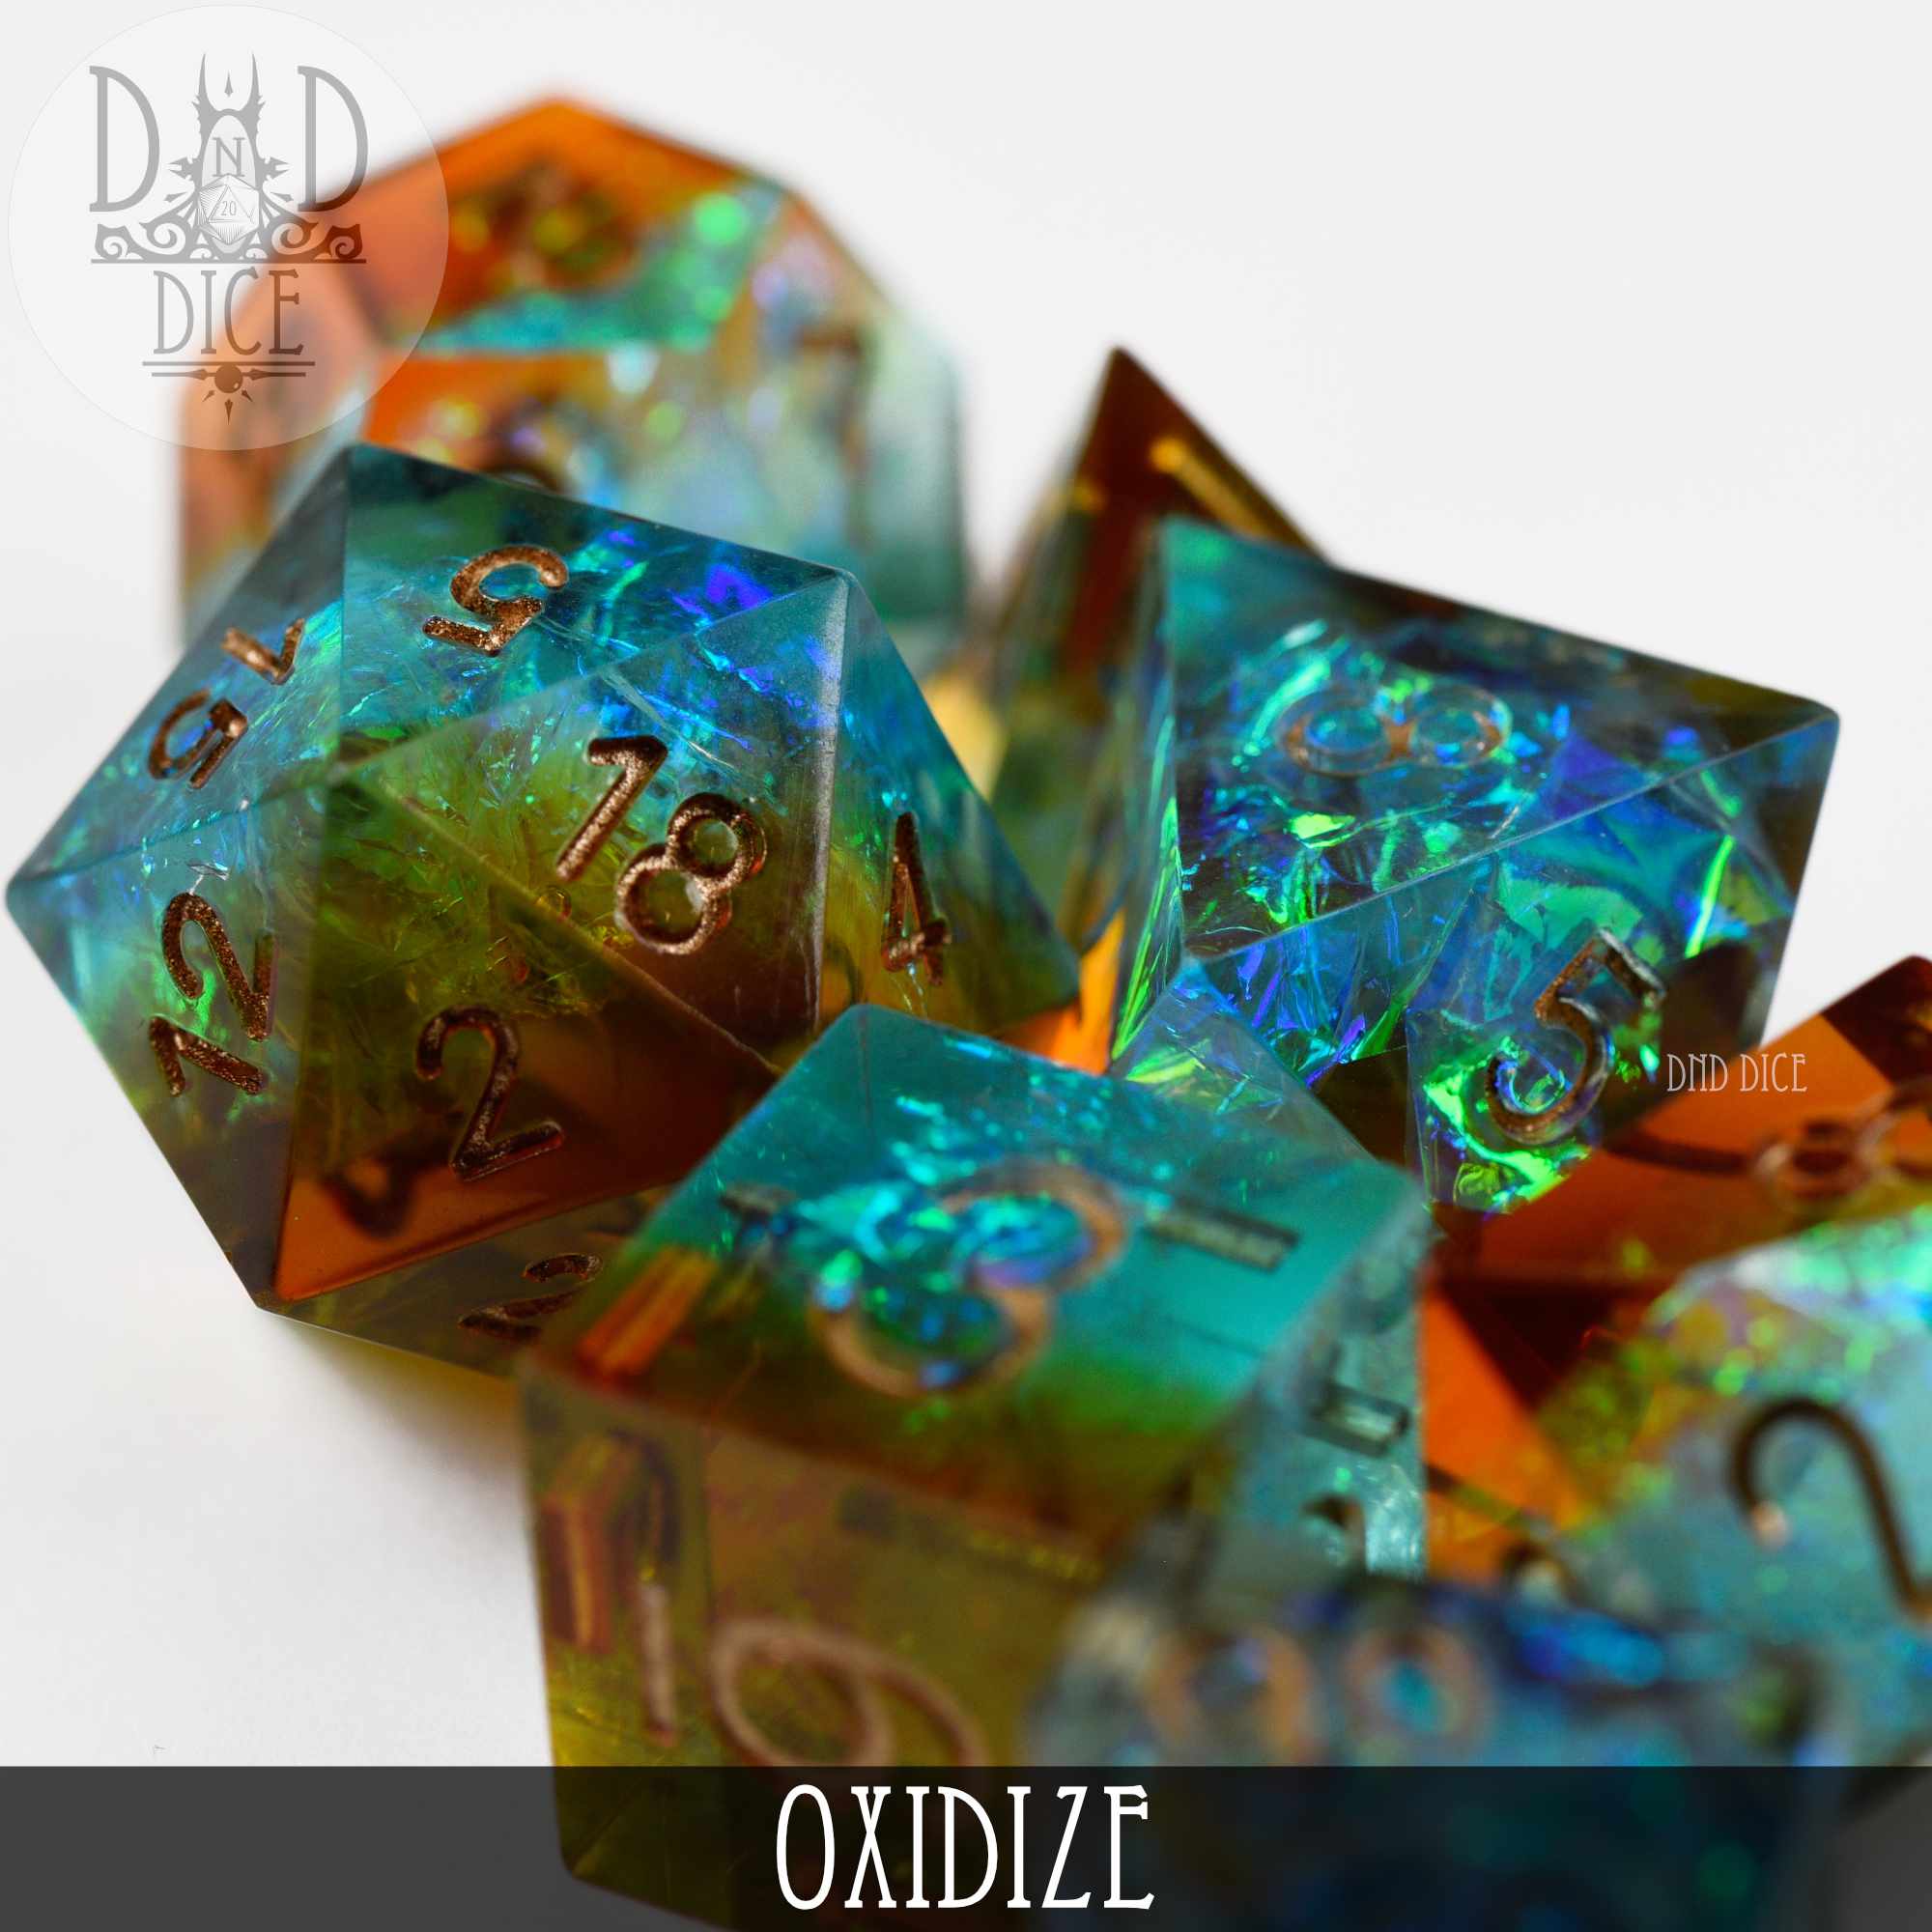 Oxidize Handmade Dice Set